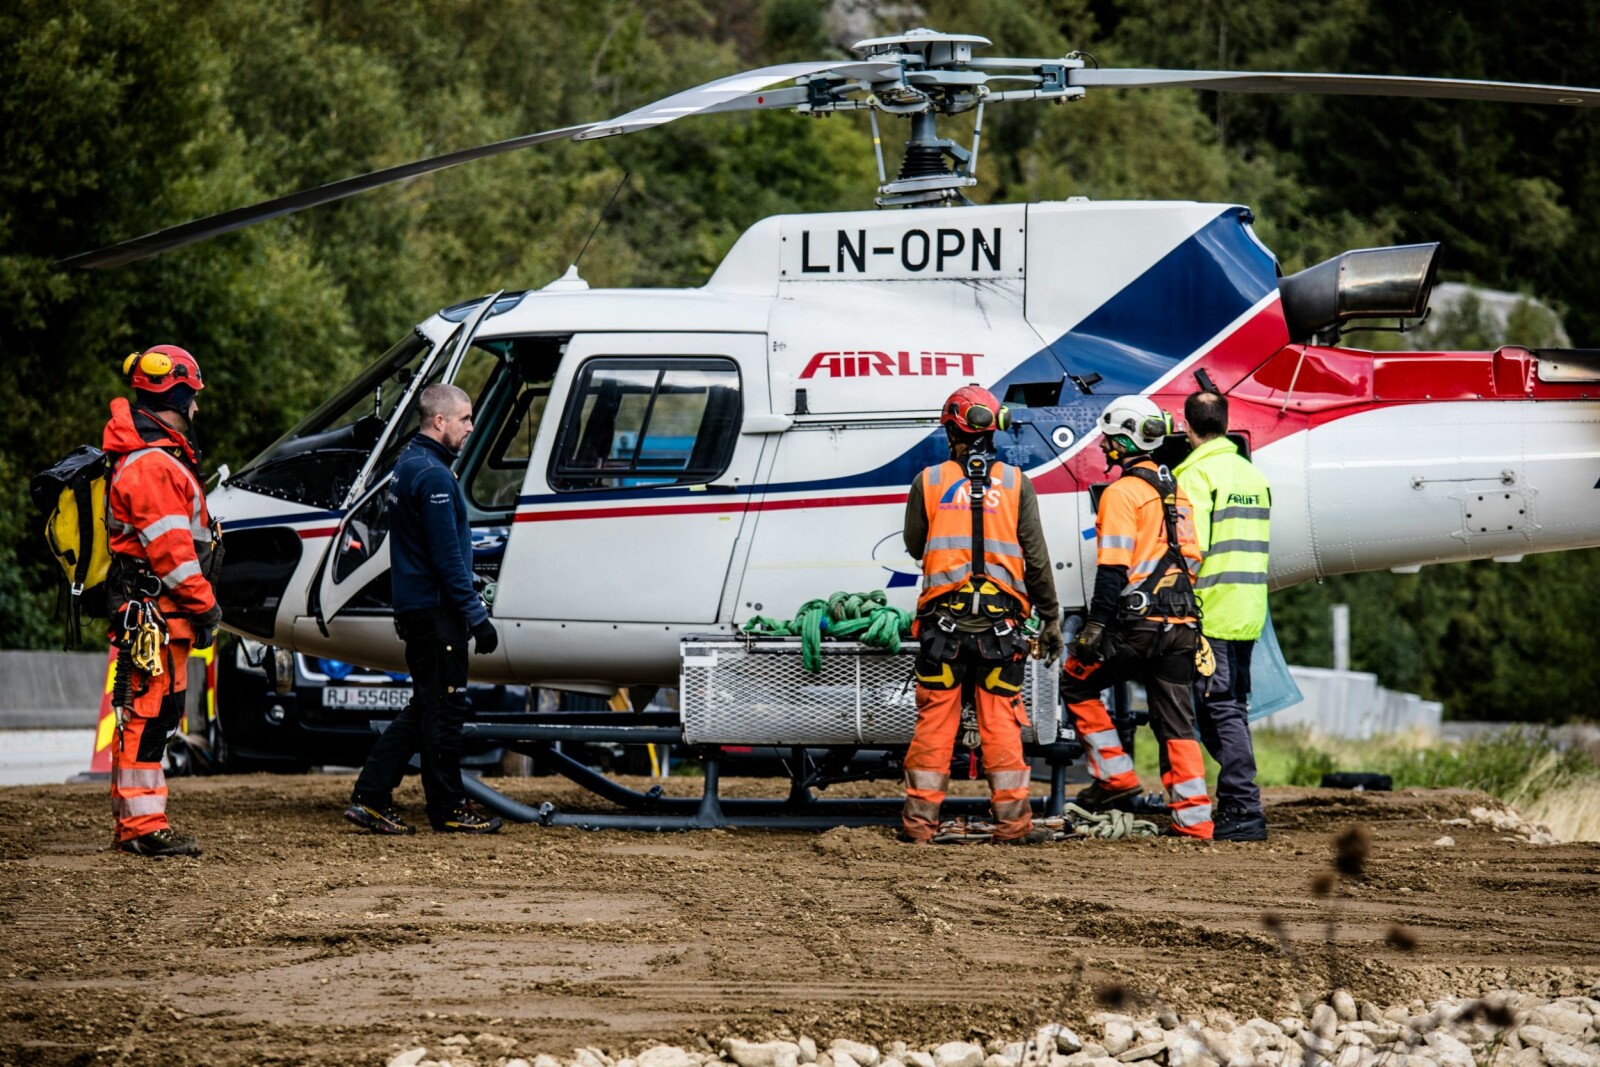 <b>LØFTERIKT:</b> Helikopteret løfter master til skredgjerdet opp i fjellsiden. Operasjonen kan være både vanskelig og risikabel. Norsk Bergsikring AS har 40 ansatte som jobber med fjellsikring i Norge.